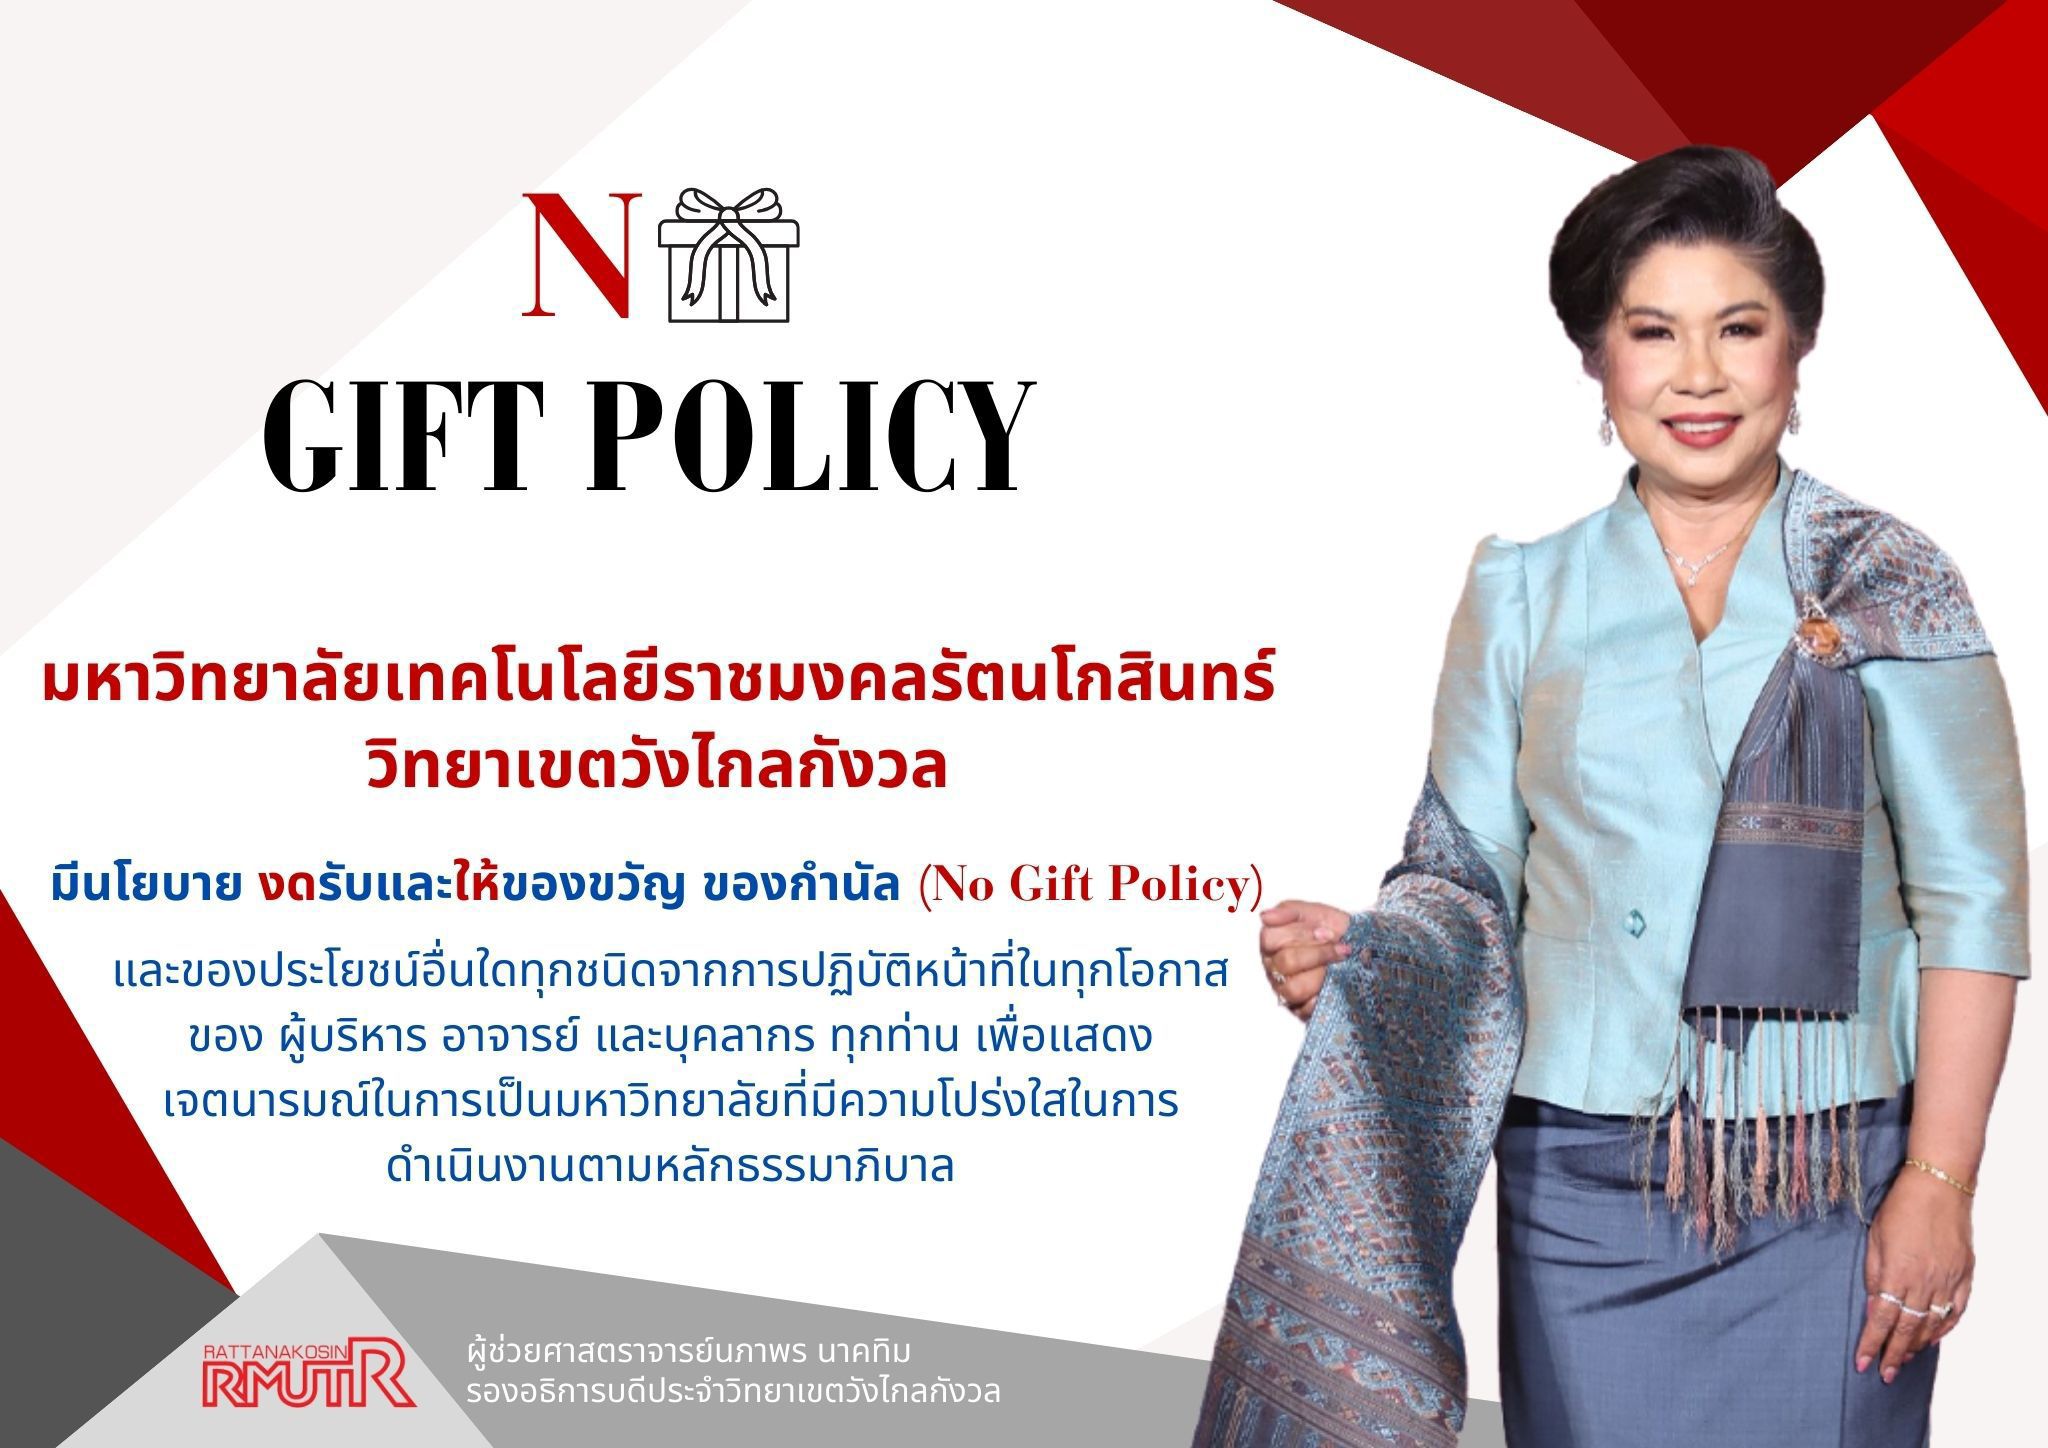 No Gift Policy 2567 (ผศ.นภาพร นาคทิม)